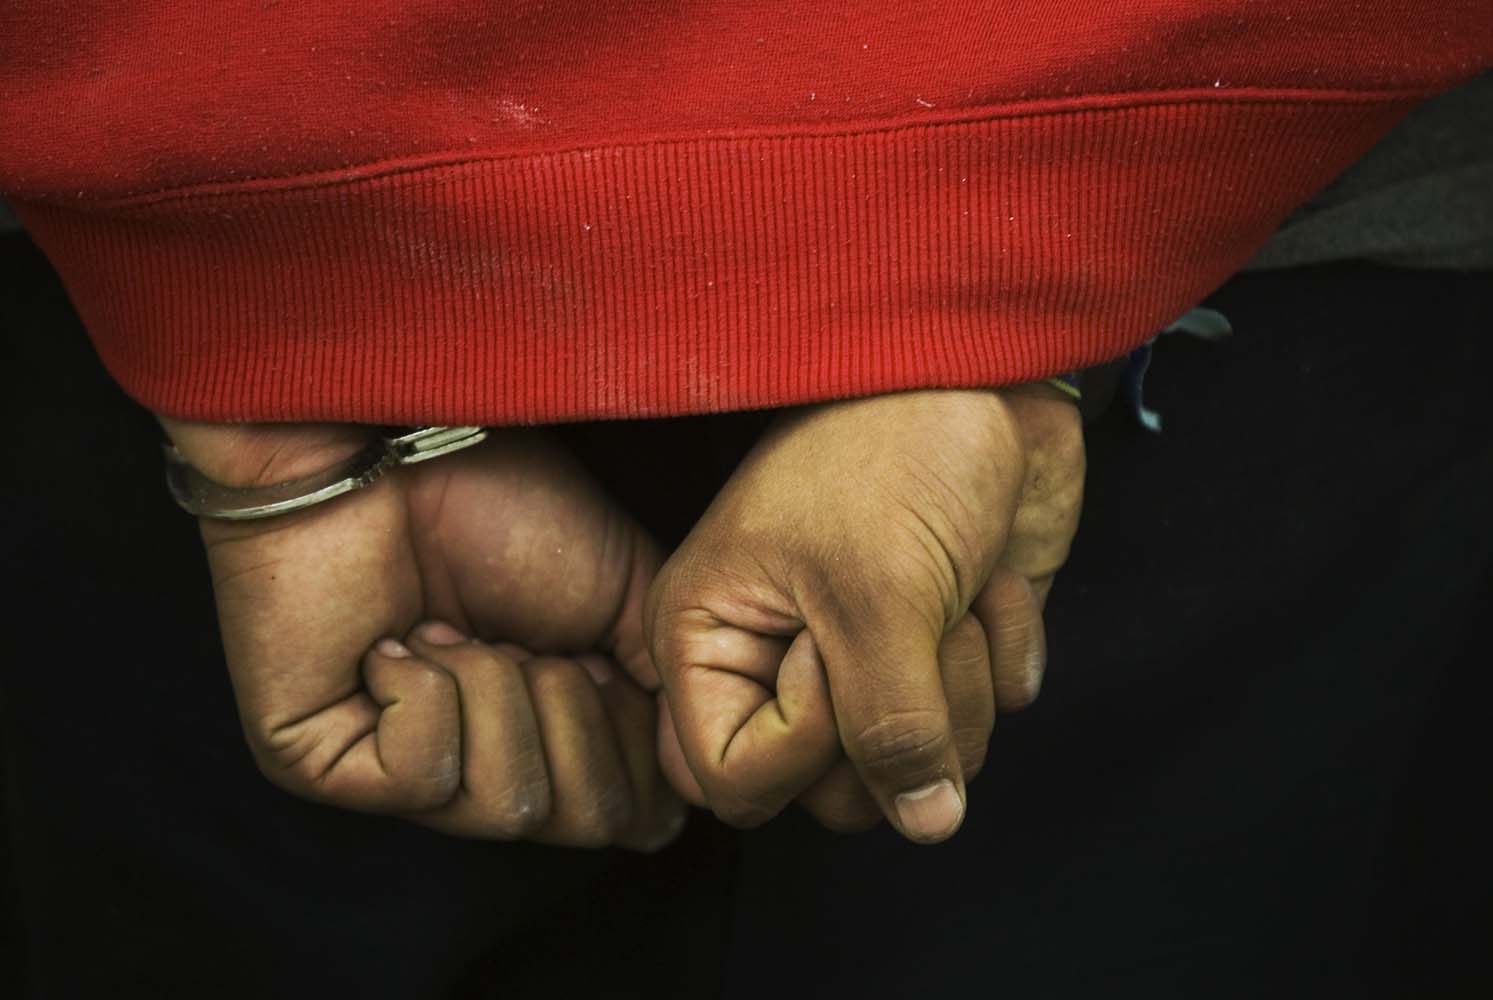 Προφυλακίστηκαν 2 αλλοδαποί για διακίνηση λαθρομεταναστών